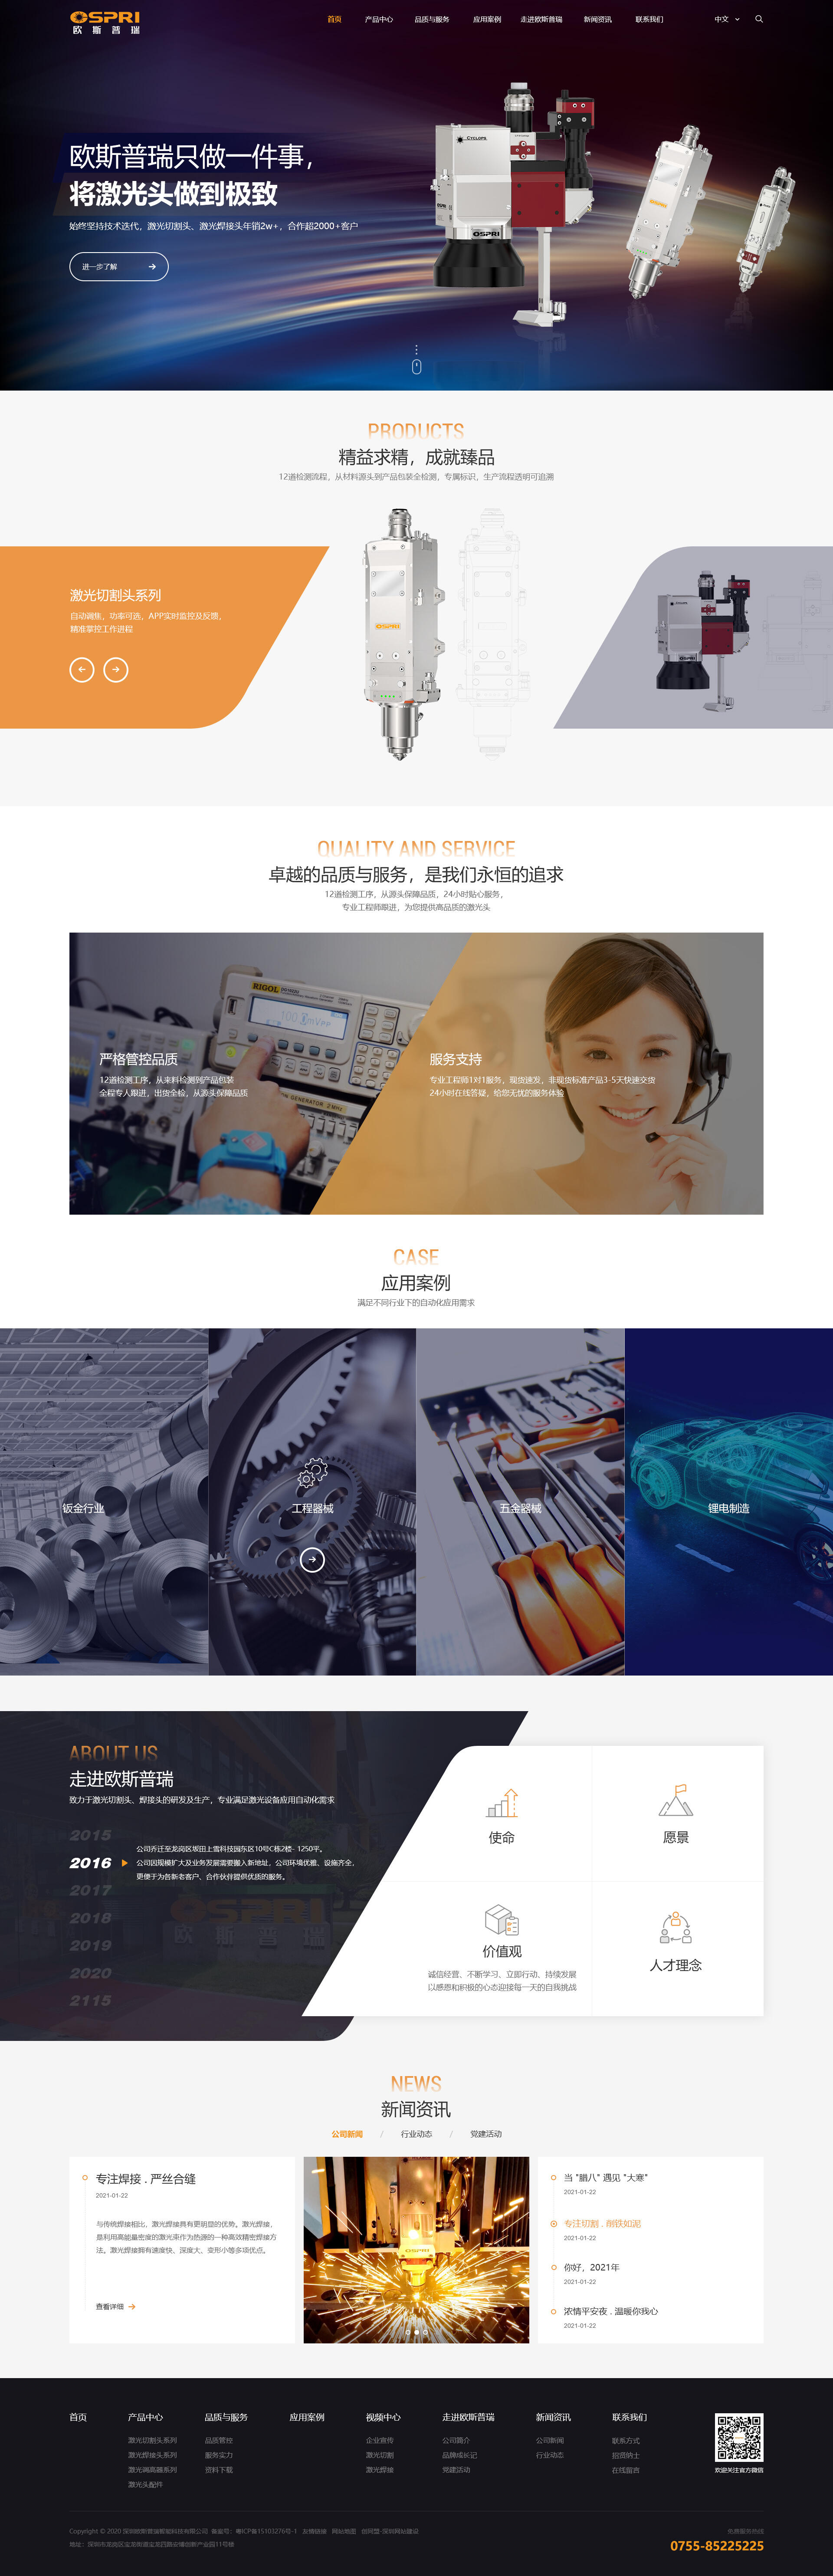 深圳歐斯普瑞智能科技有限公司 頁面展示